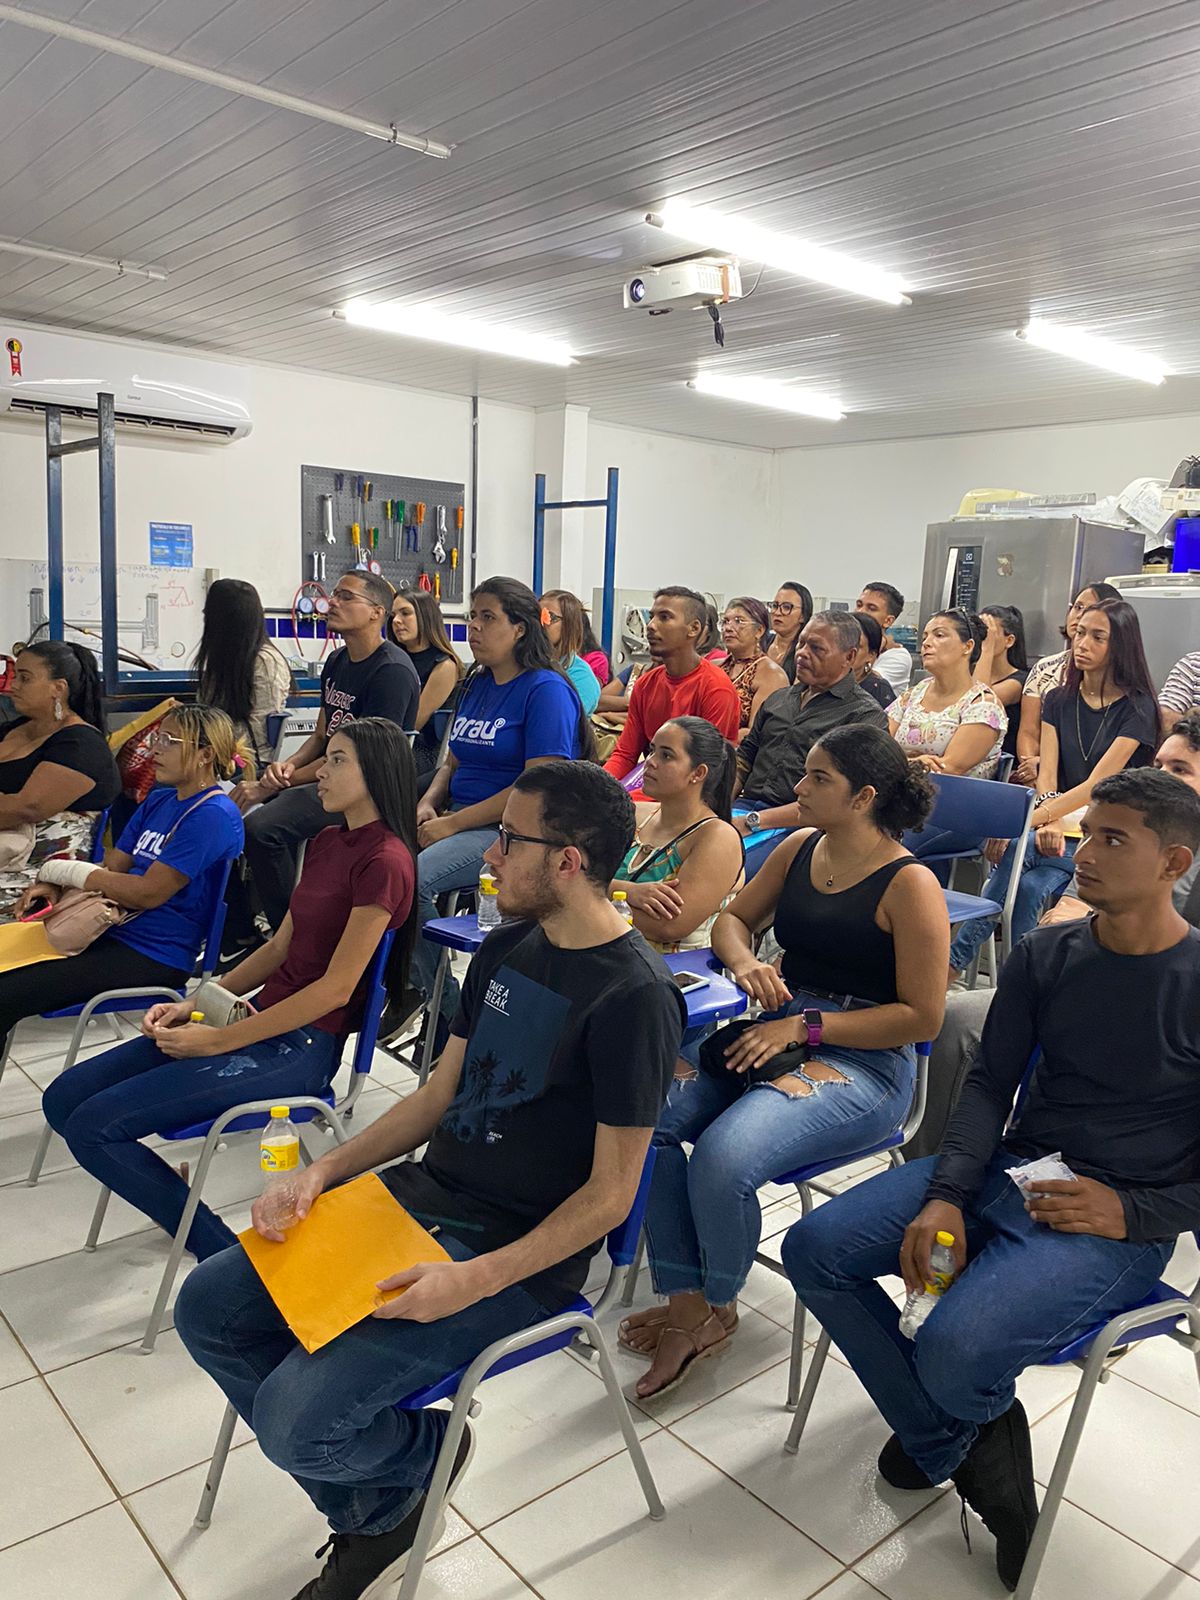  Paulista recebe mutirão com 300 vagas de empregos e serviços gratuitos para população da região